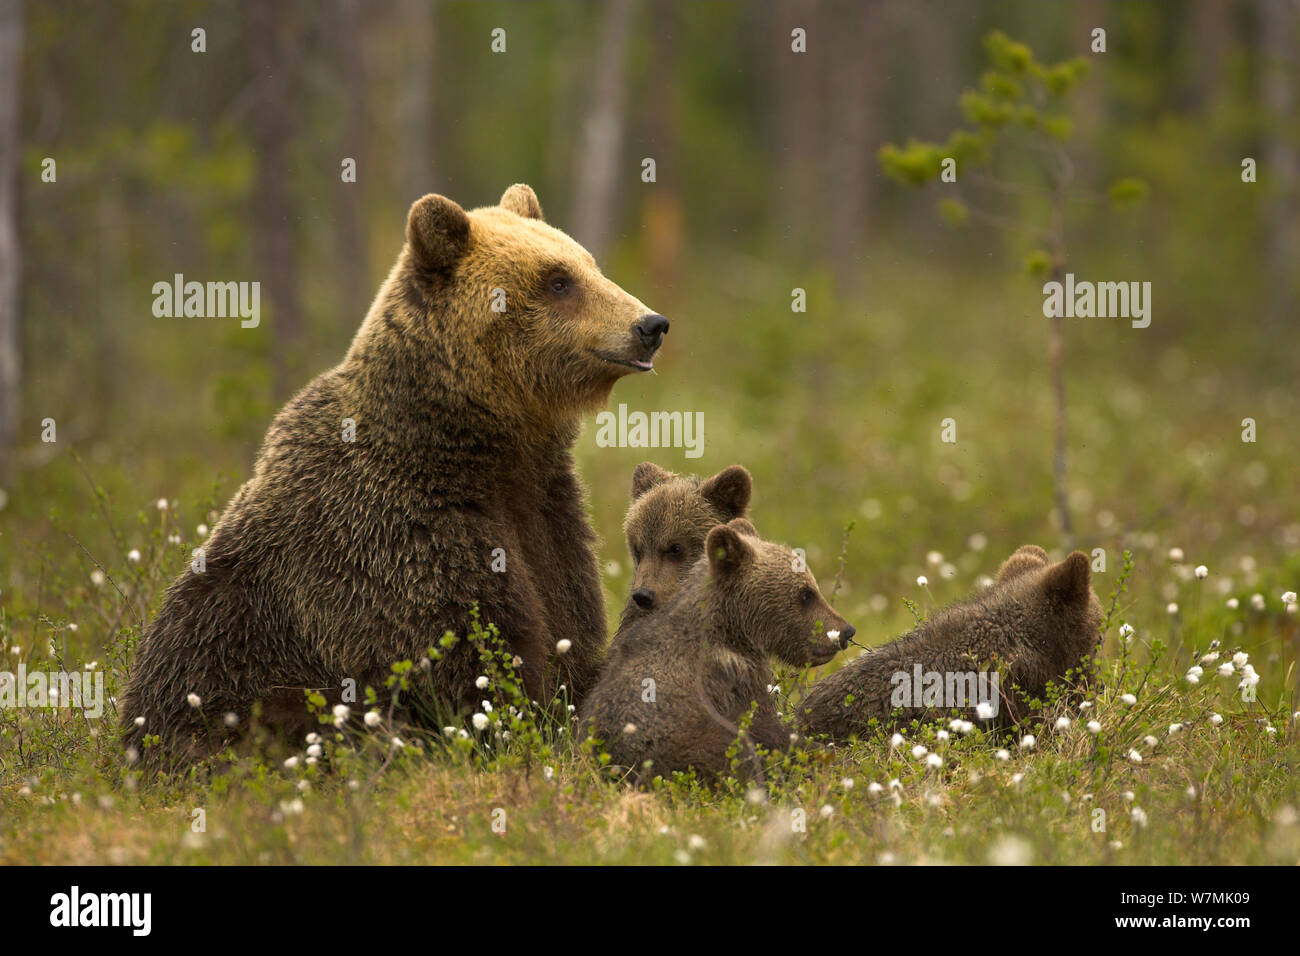 Brown Bear (Ursus arctos) and cubs. Finland, Europe, June. Stock Photo